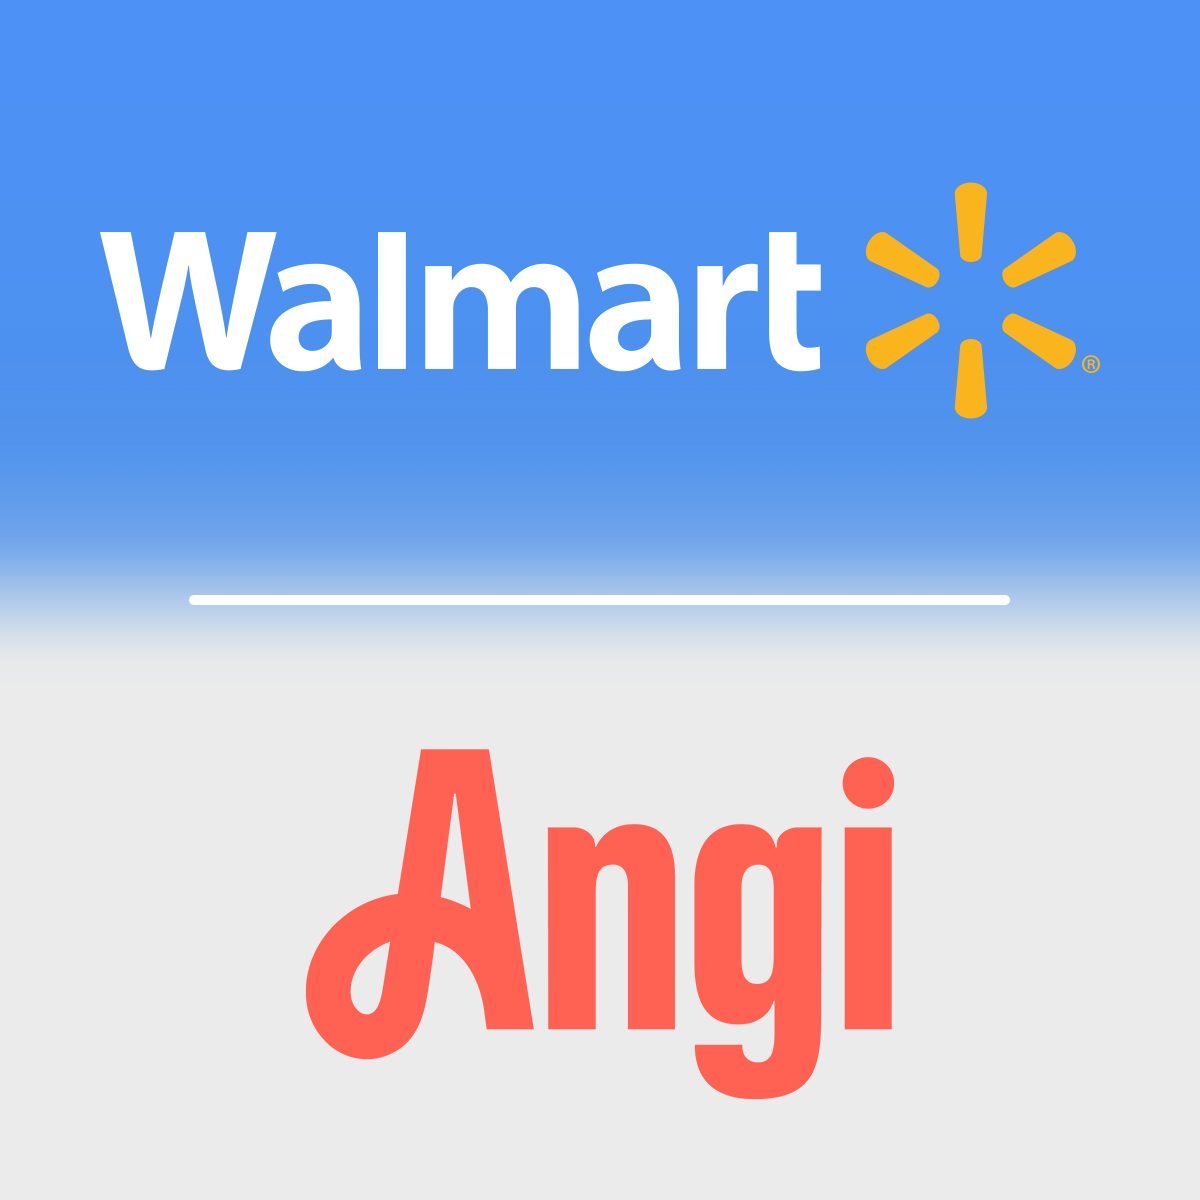 Walmart And Angi Partnership